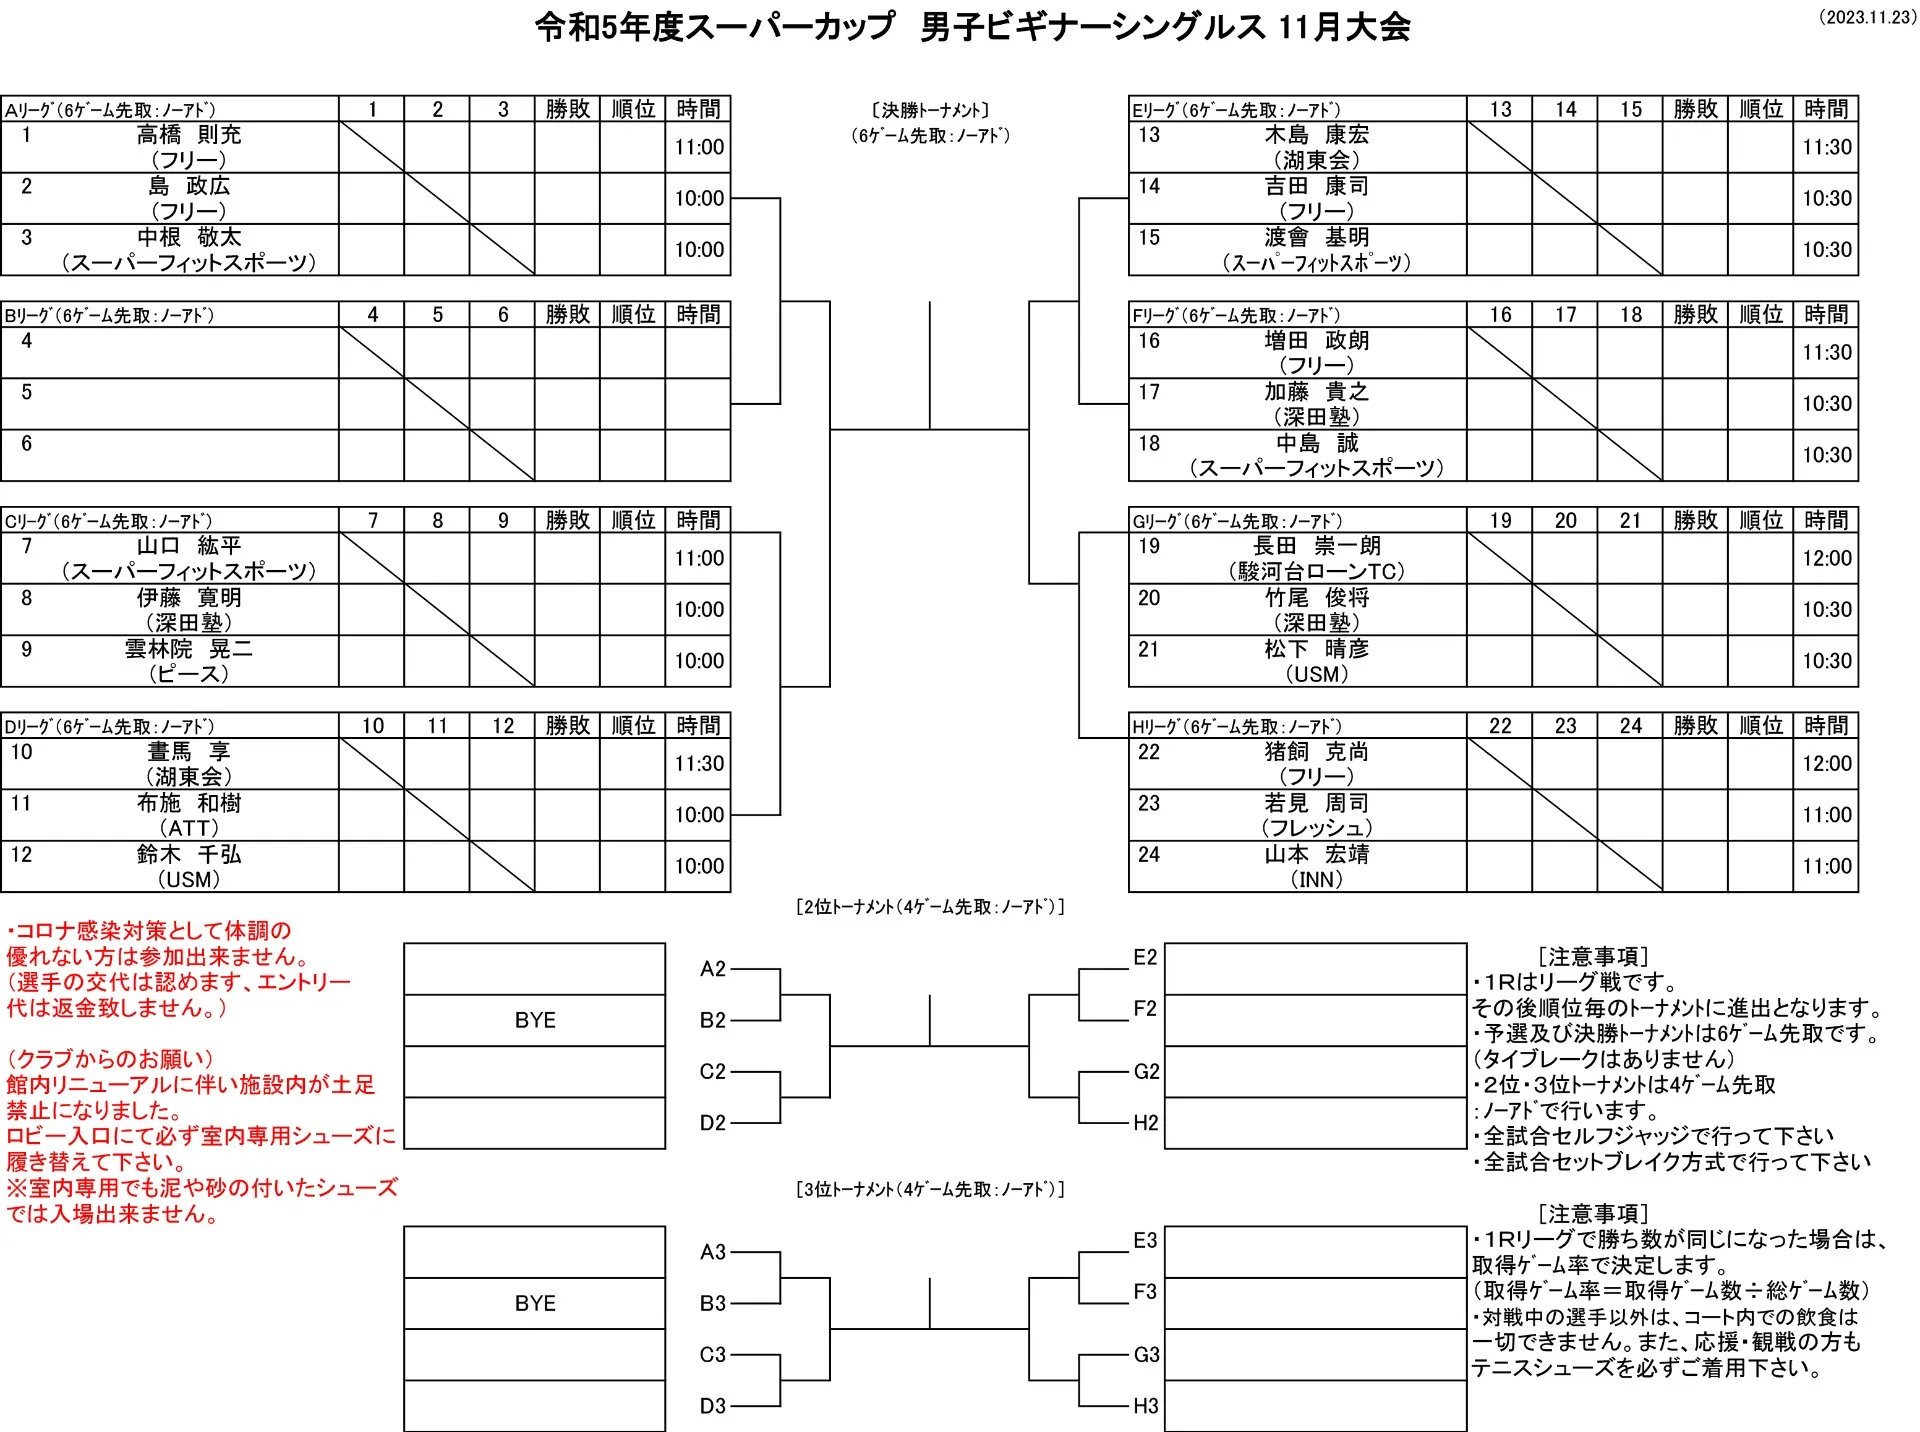 【試合】11/23（木・祝）ドロー発表